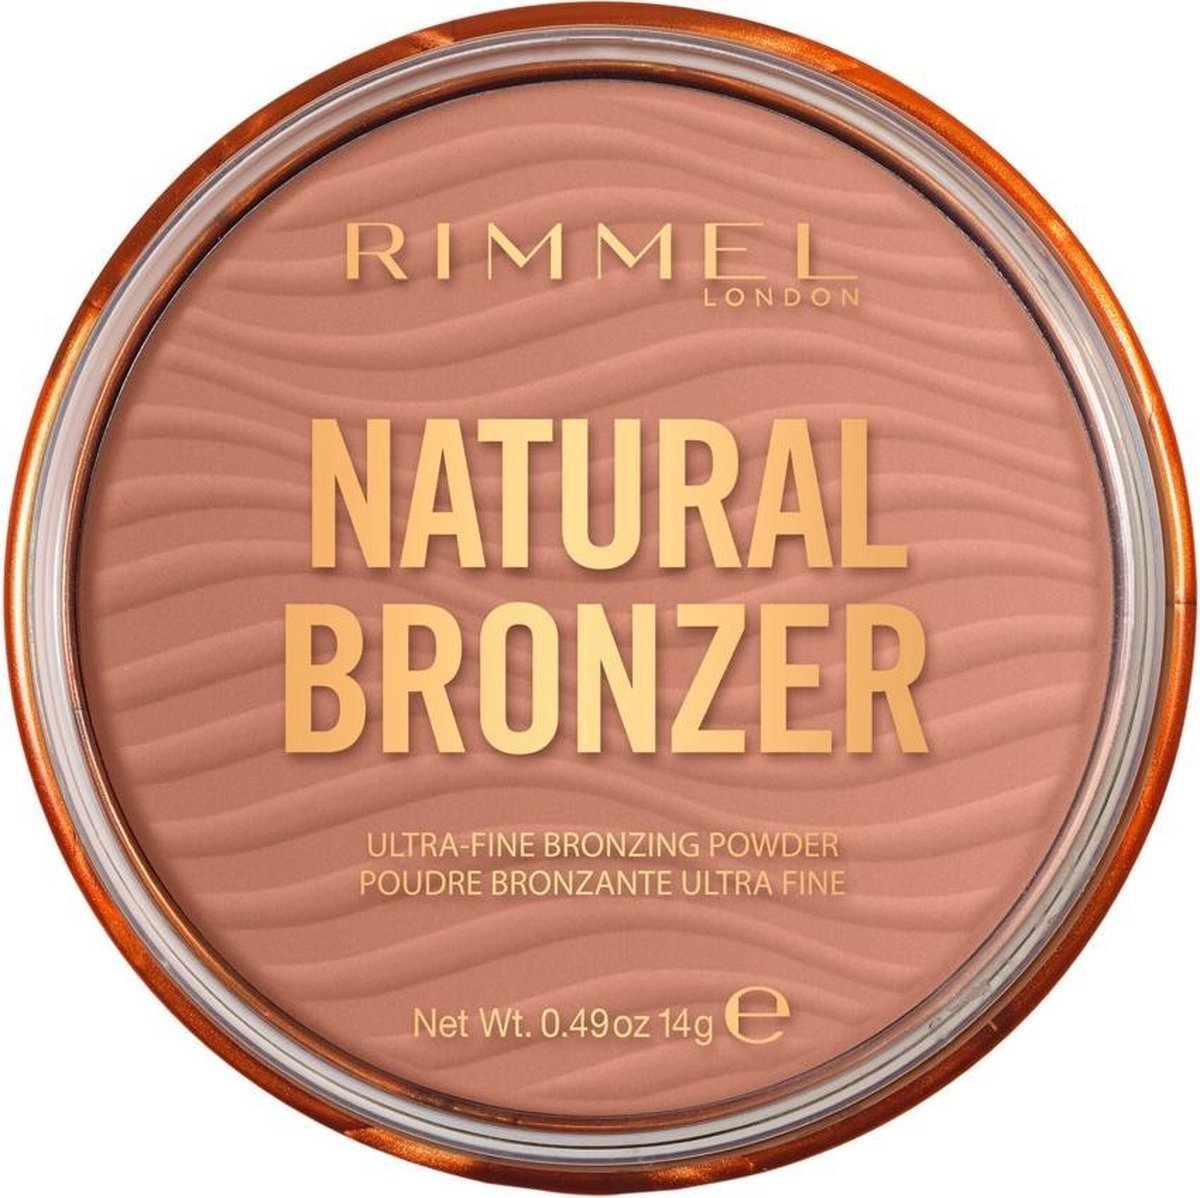 Rimmel London Natural Bronzer Ultra Fine Bronzing Powder – Sunlight 001 – Verpackung beschädigt